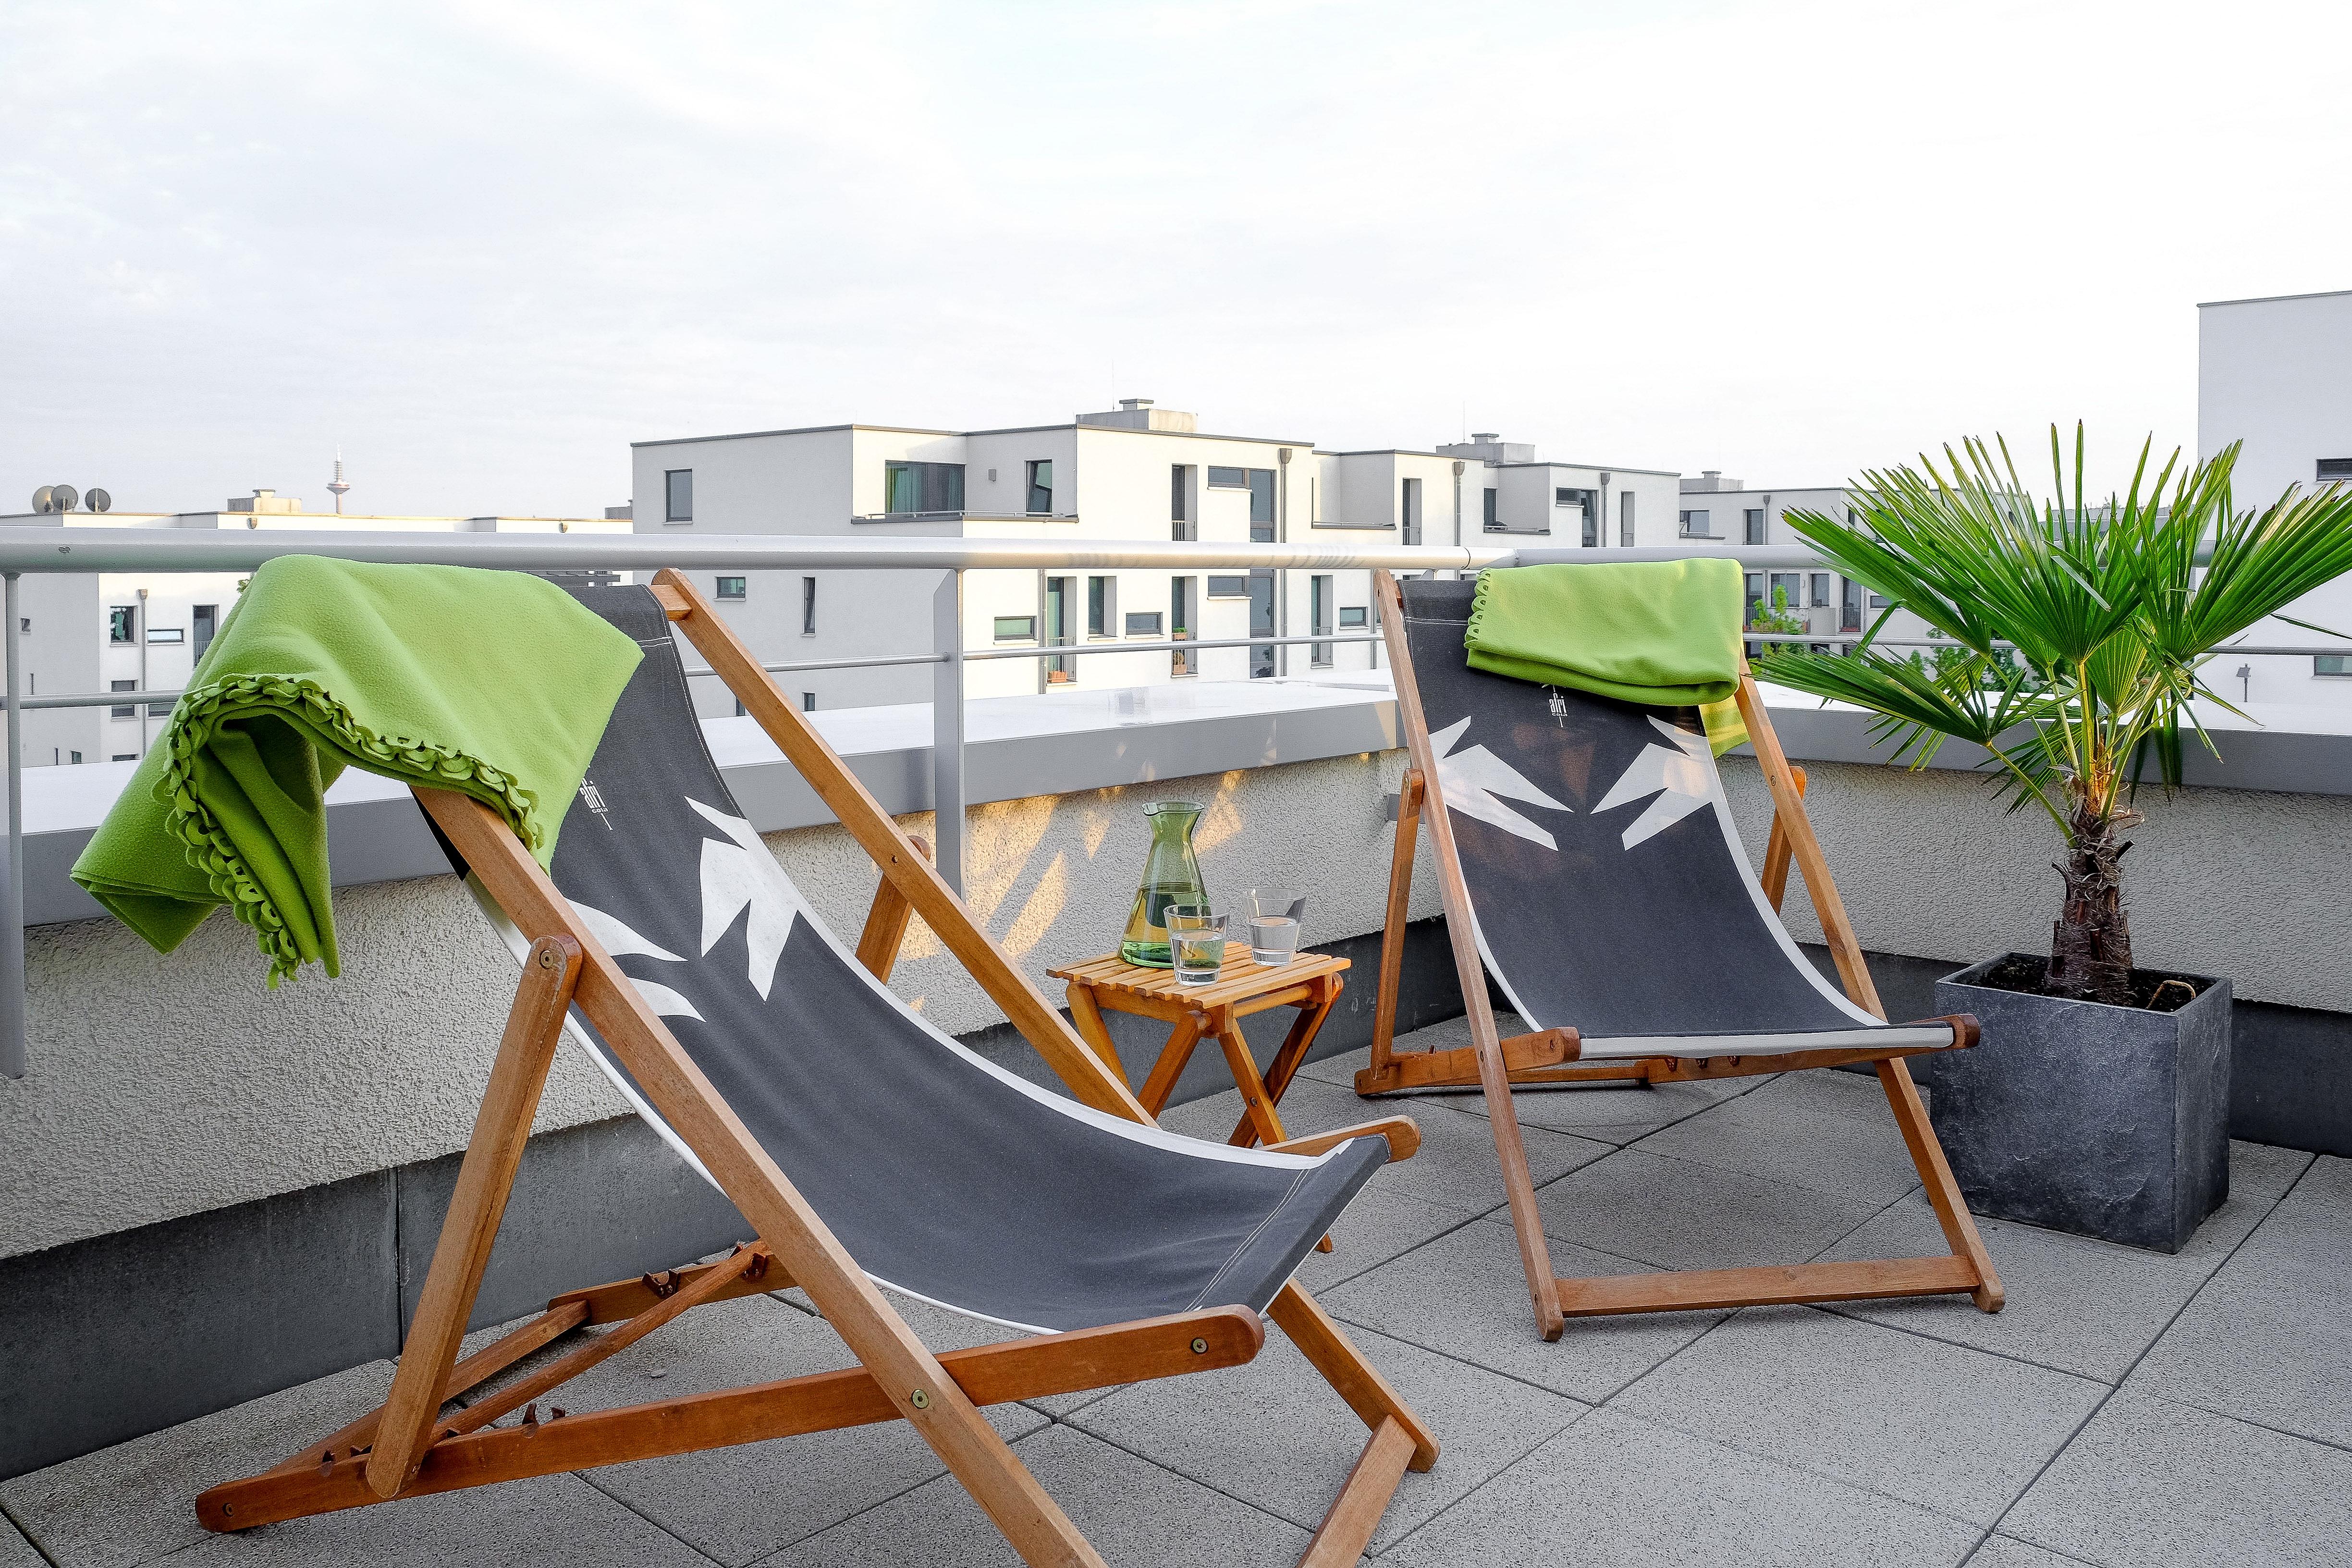 Dachterrasse mit Afri Cola-Liegestühlen #dachterrasse ©EXTRVIEL office & home design